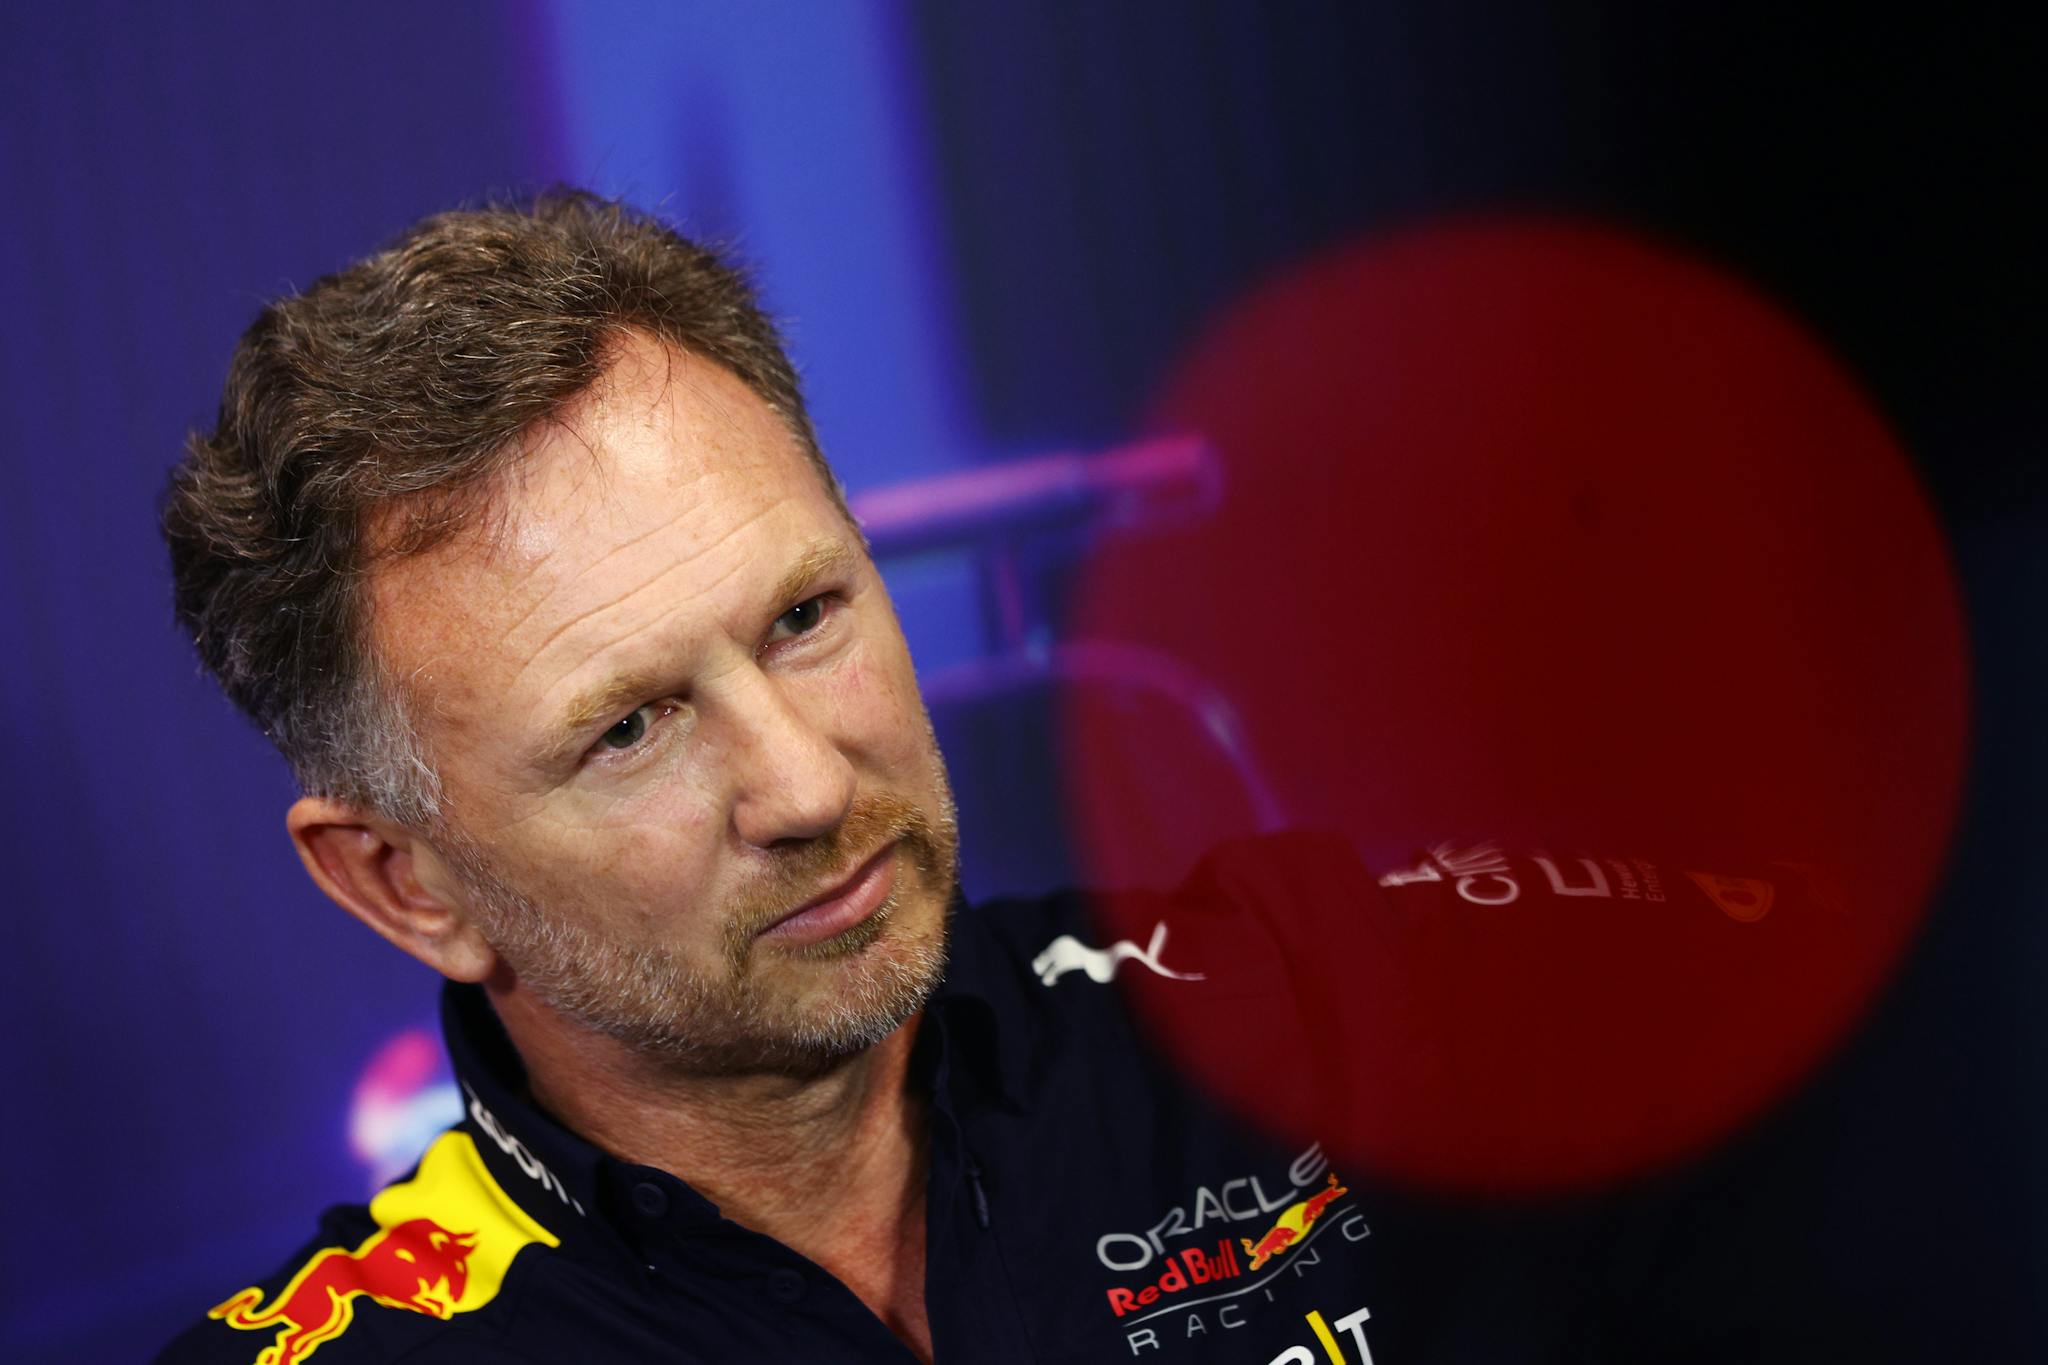 Red Bull kontratakuje ws. limitów i wskazuje na przecieki tajnych danych